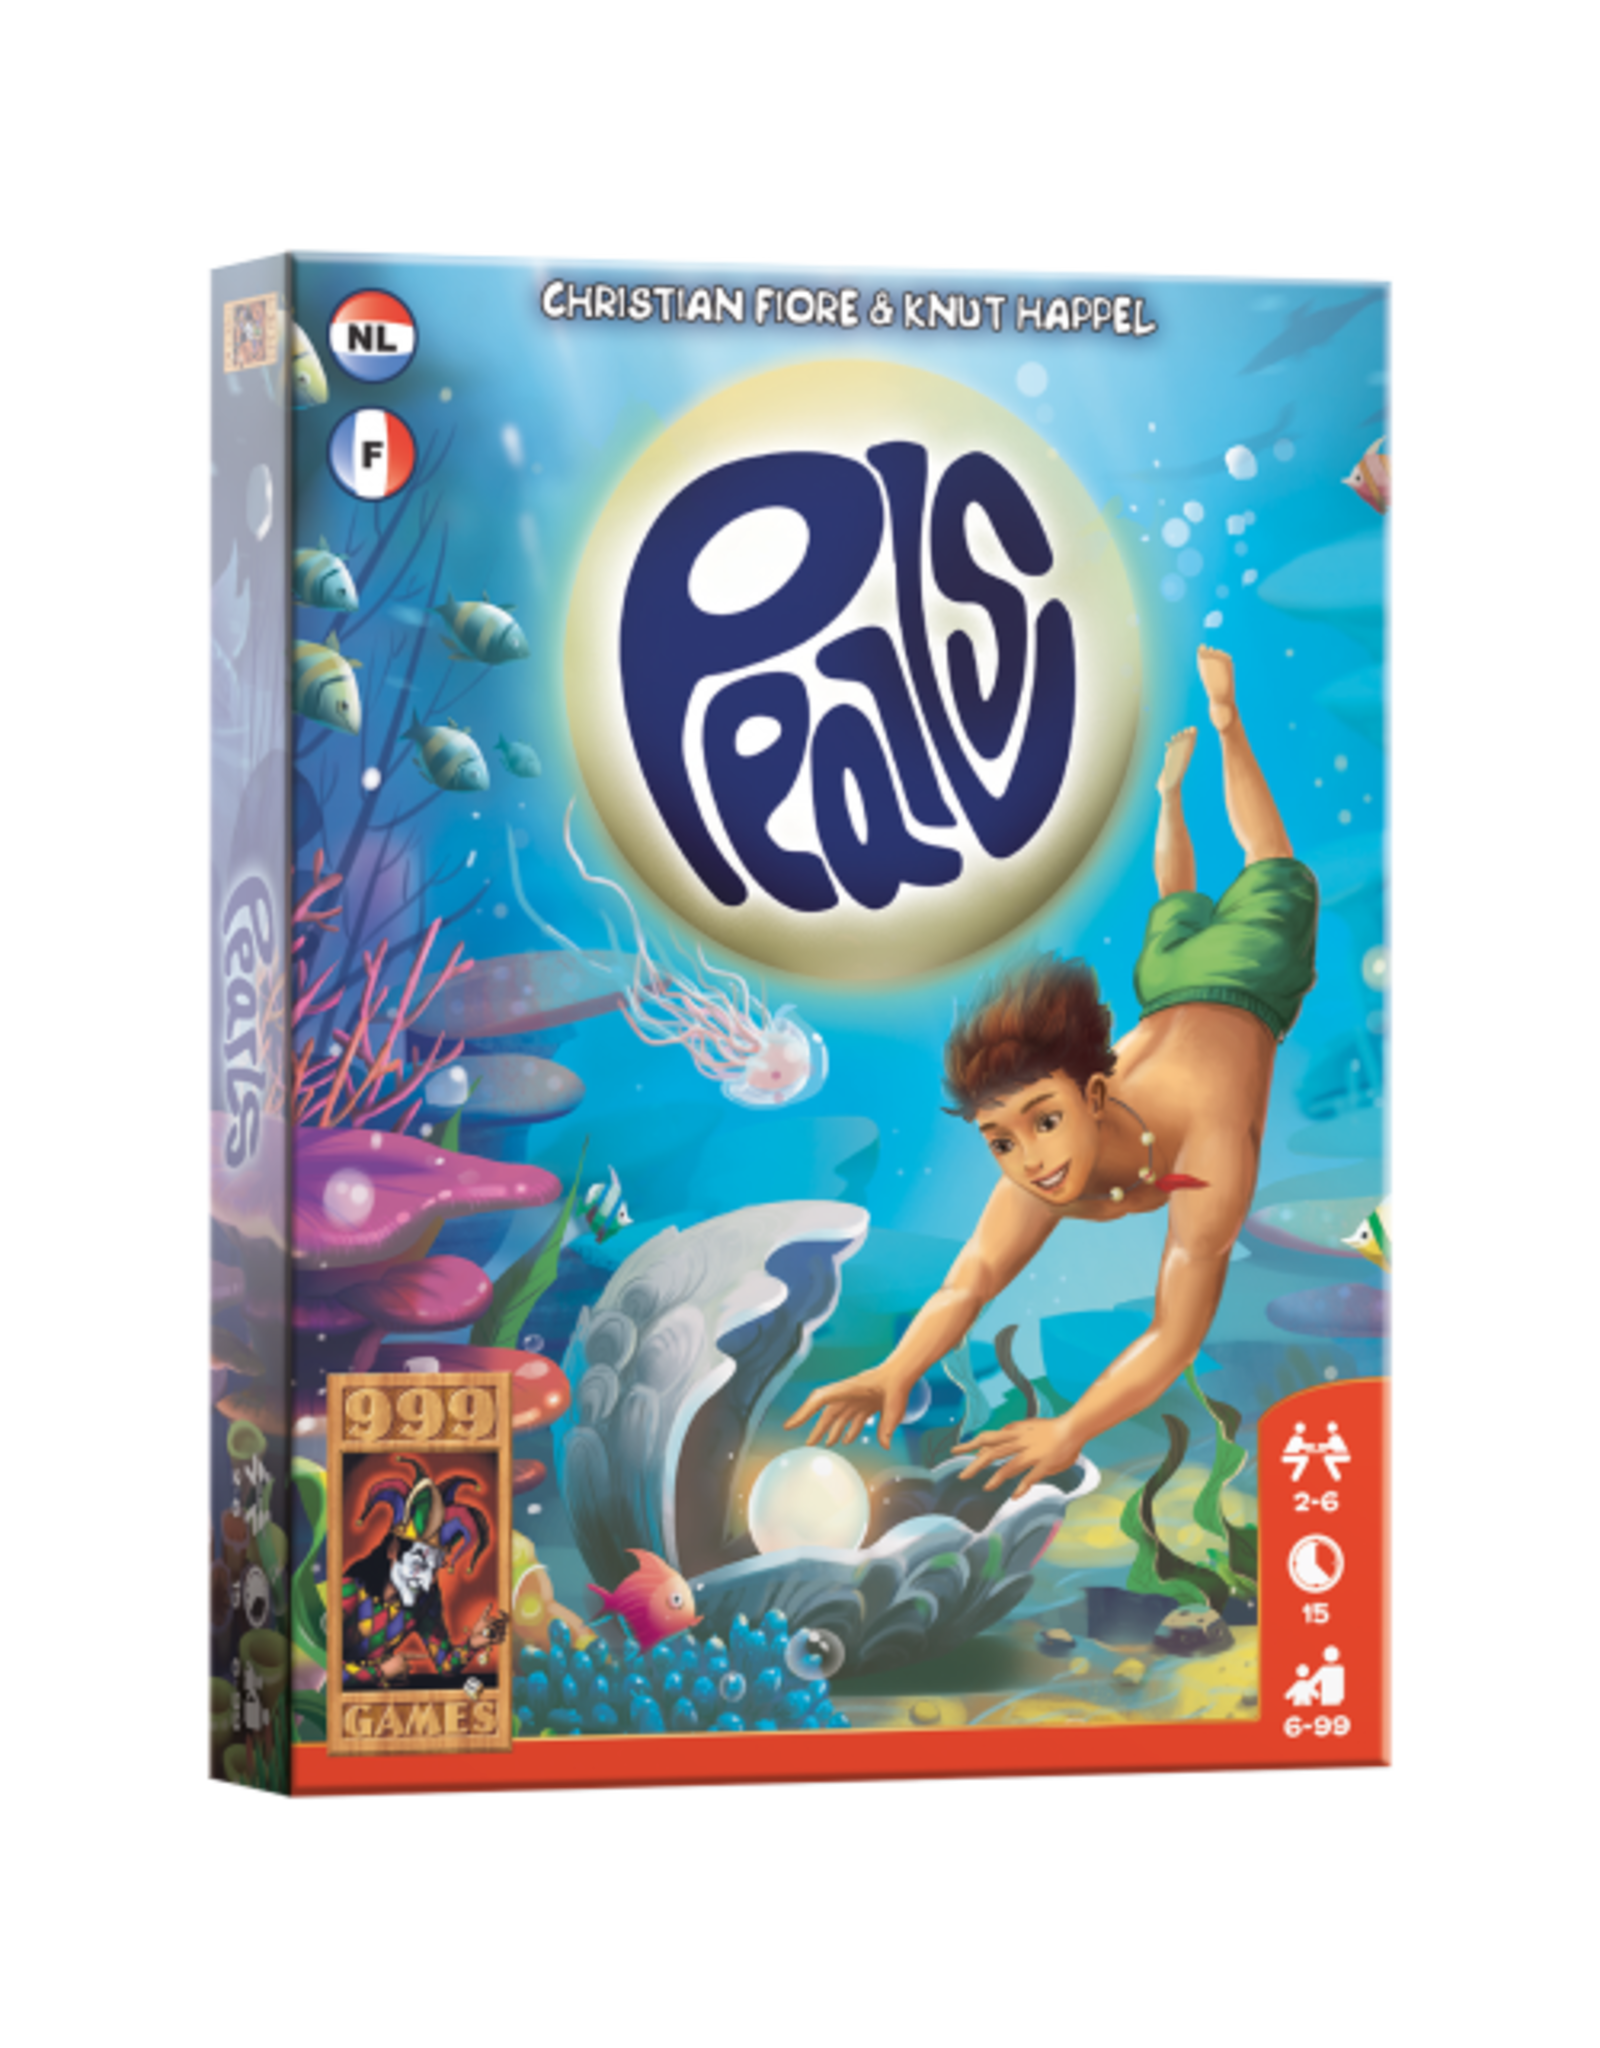 999 GAMES Pearls - Kaartspel